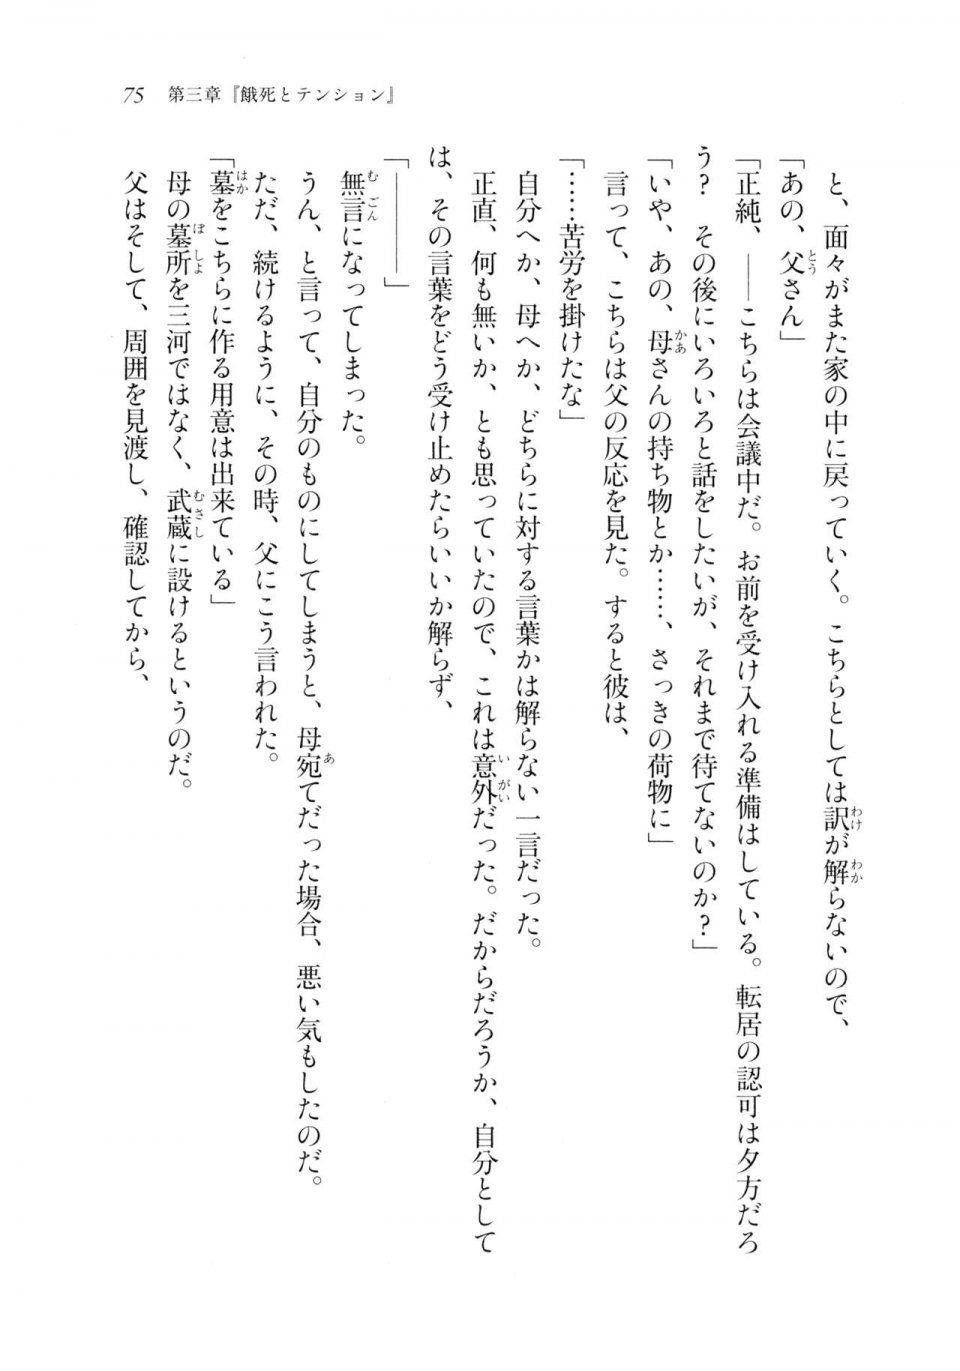 Kyoukai Senjou no Horizon LN Sidestory Vol 2 - Photo #73